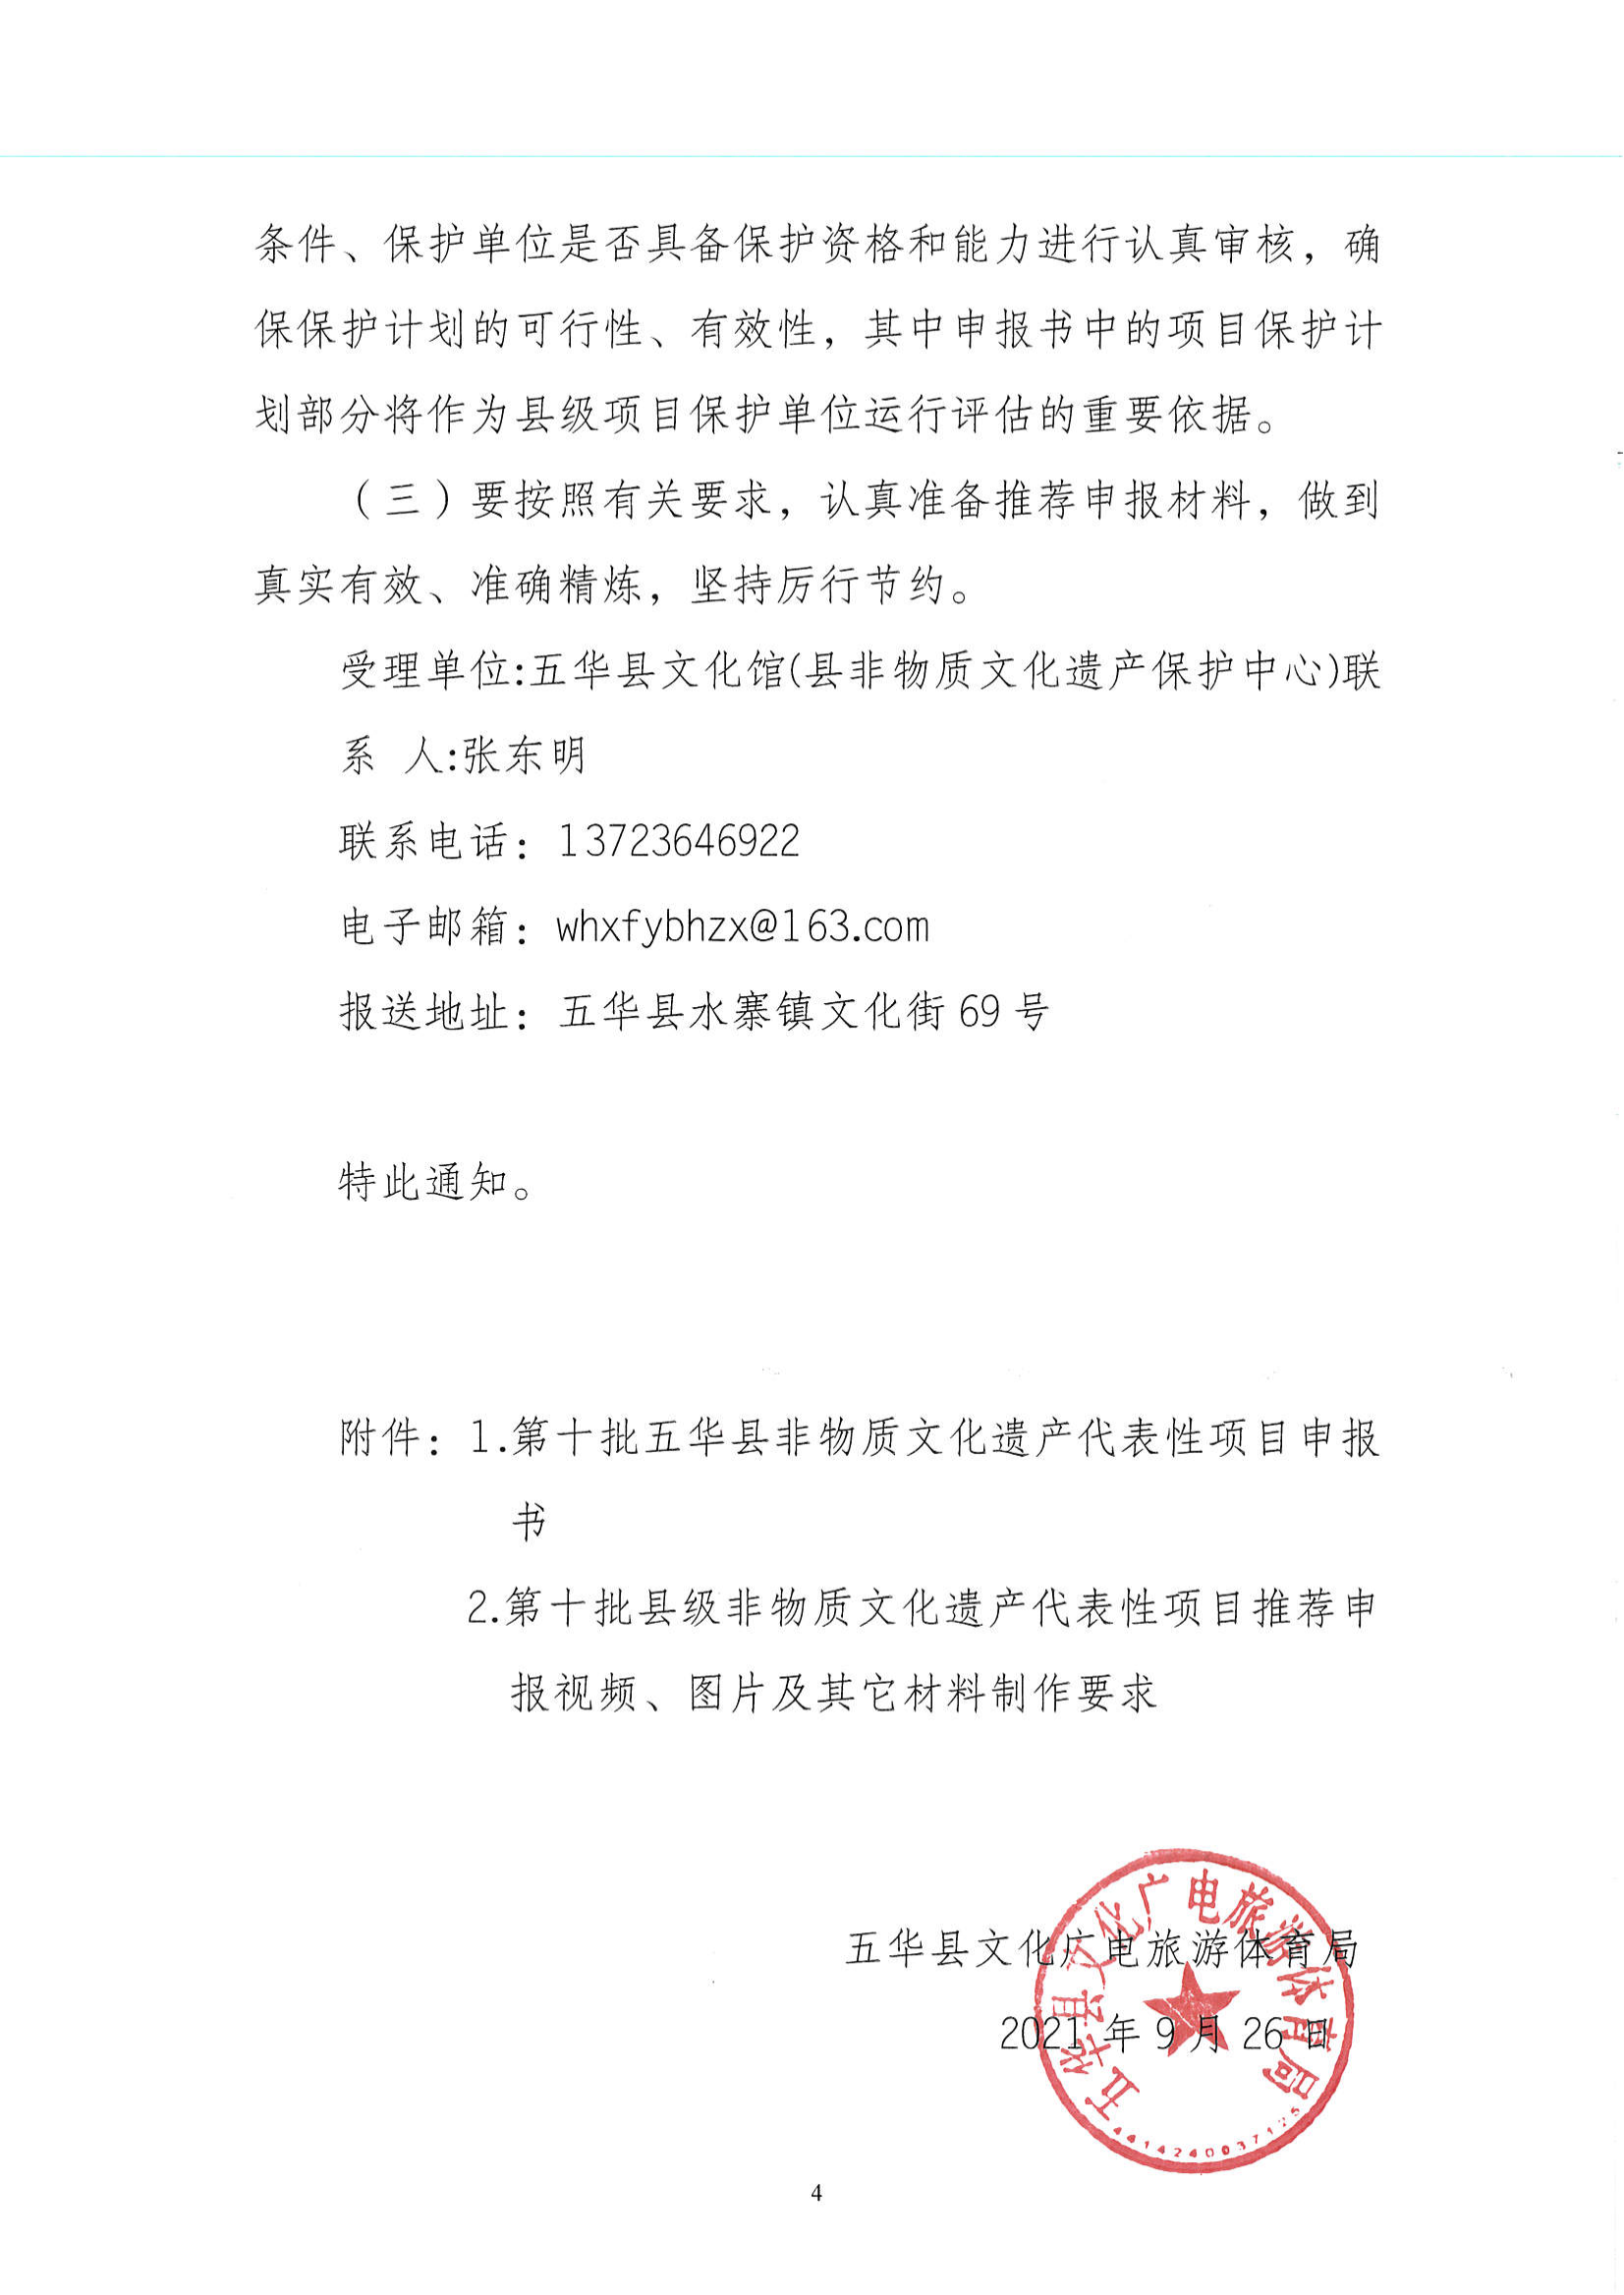 华文广旅体字〔2021〕24号  代表性项目推荐申报工作的通知_03.png